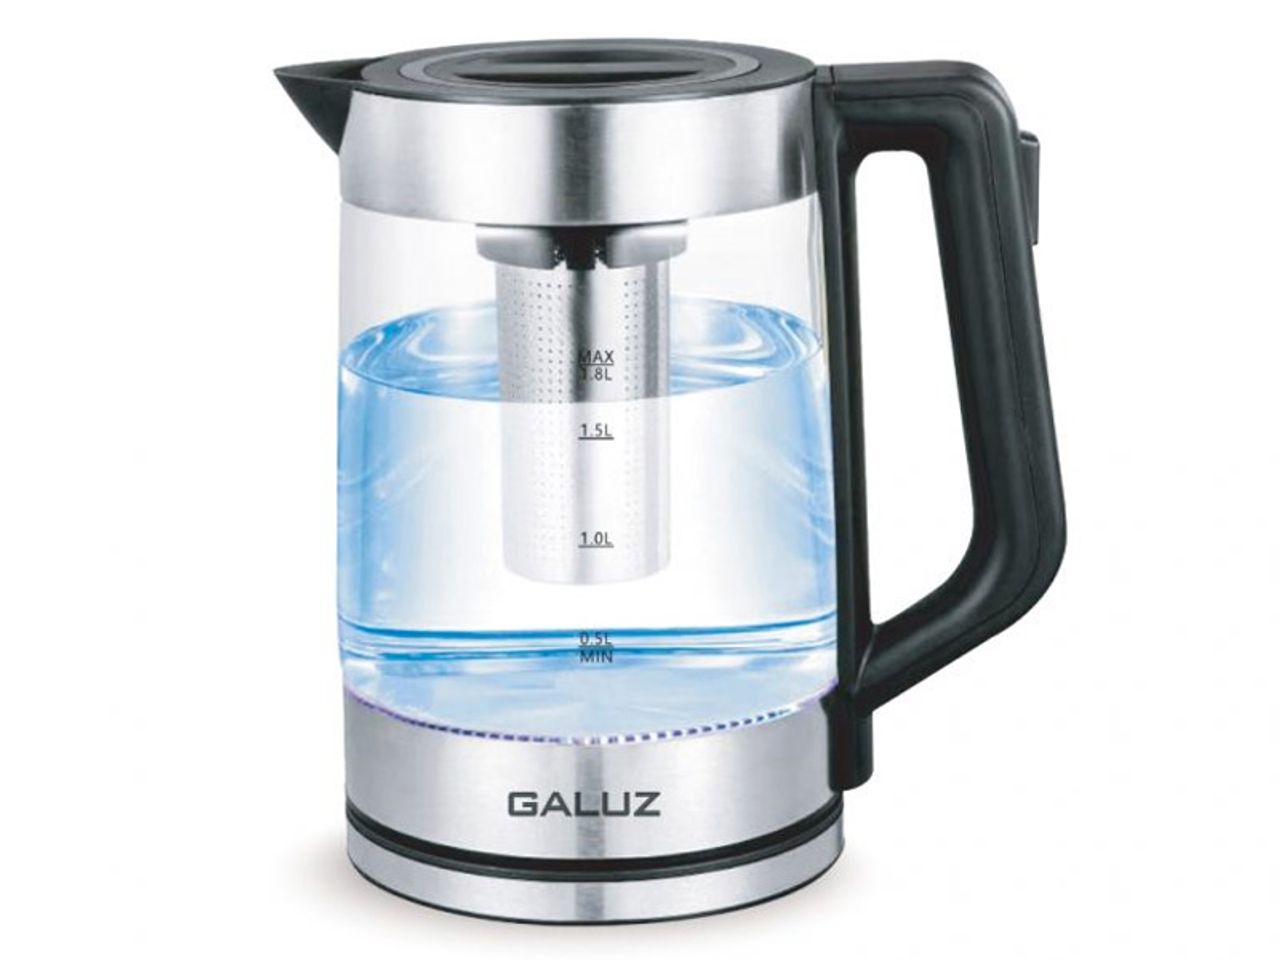 Ấm điện đun nước siêu tốc Galuz GK-01 chính hãng